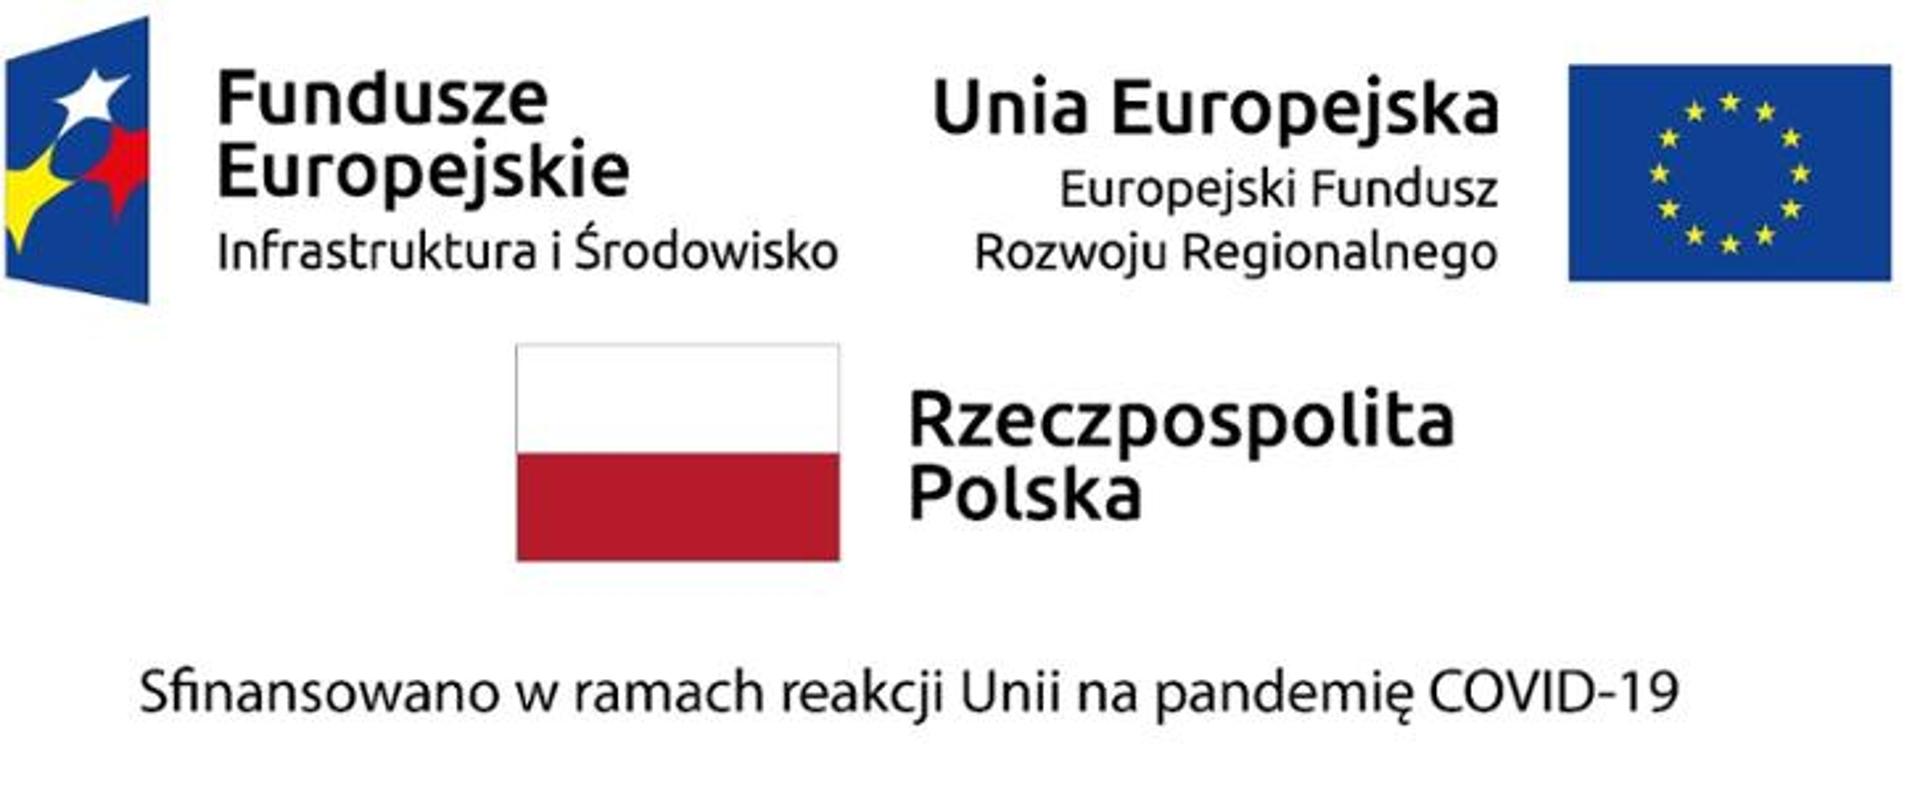 Oznaczenia Funduszy Europejskich, Unii Europejskiej i Rzeczypospolitej Polskie. Tekst Sfinansowano w ramach reakcji Unii na pandemię COVID-19